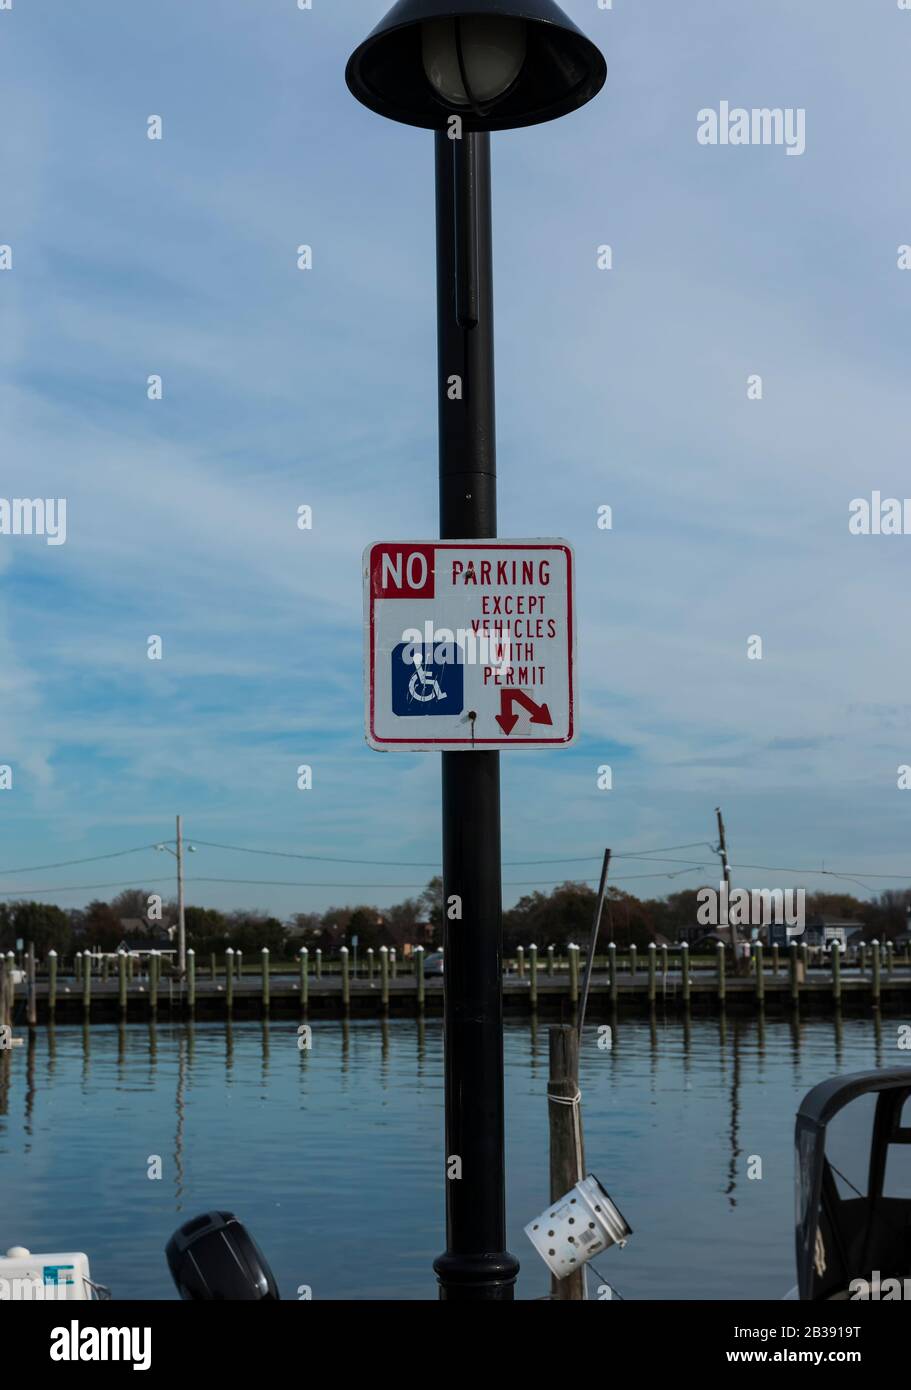 Un poteau de lampe à une marina a un panneau qui lit, pas de parking sauf vihicules avec un permis pour le stationnement handicapés. Banque D'Images